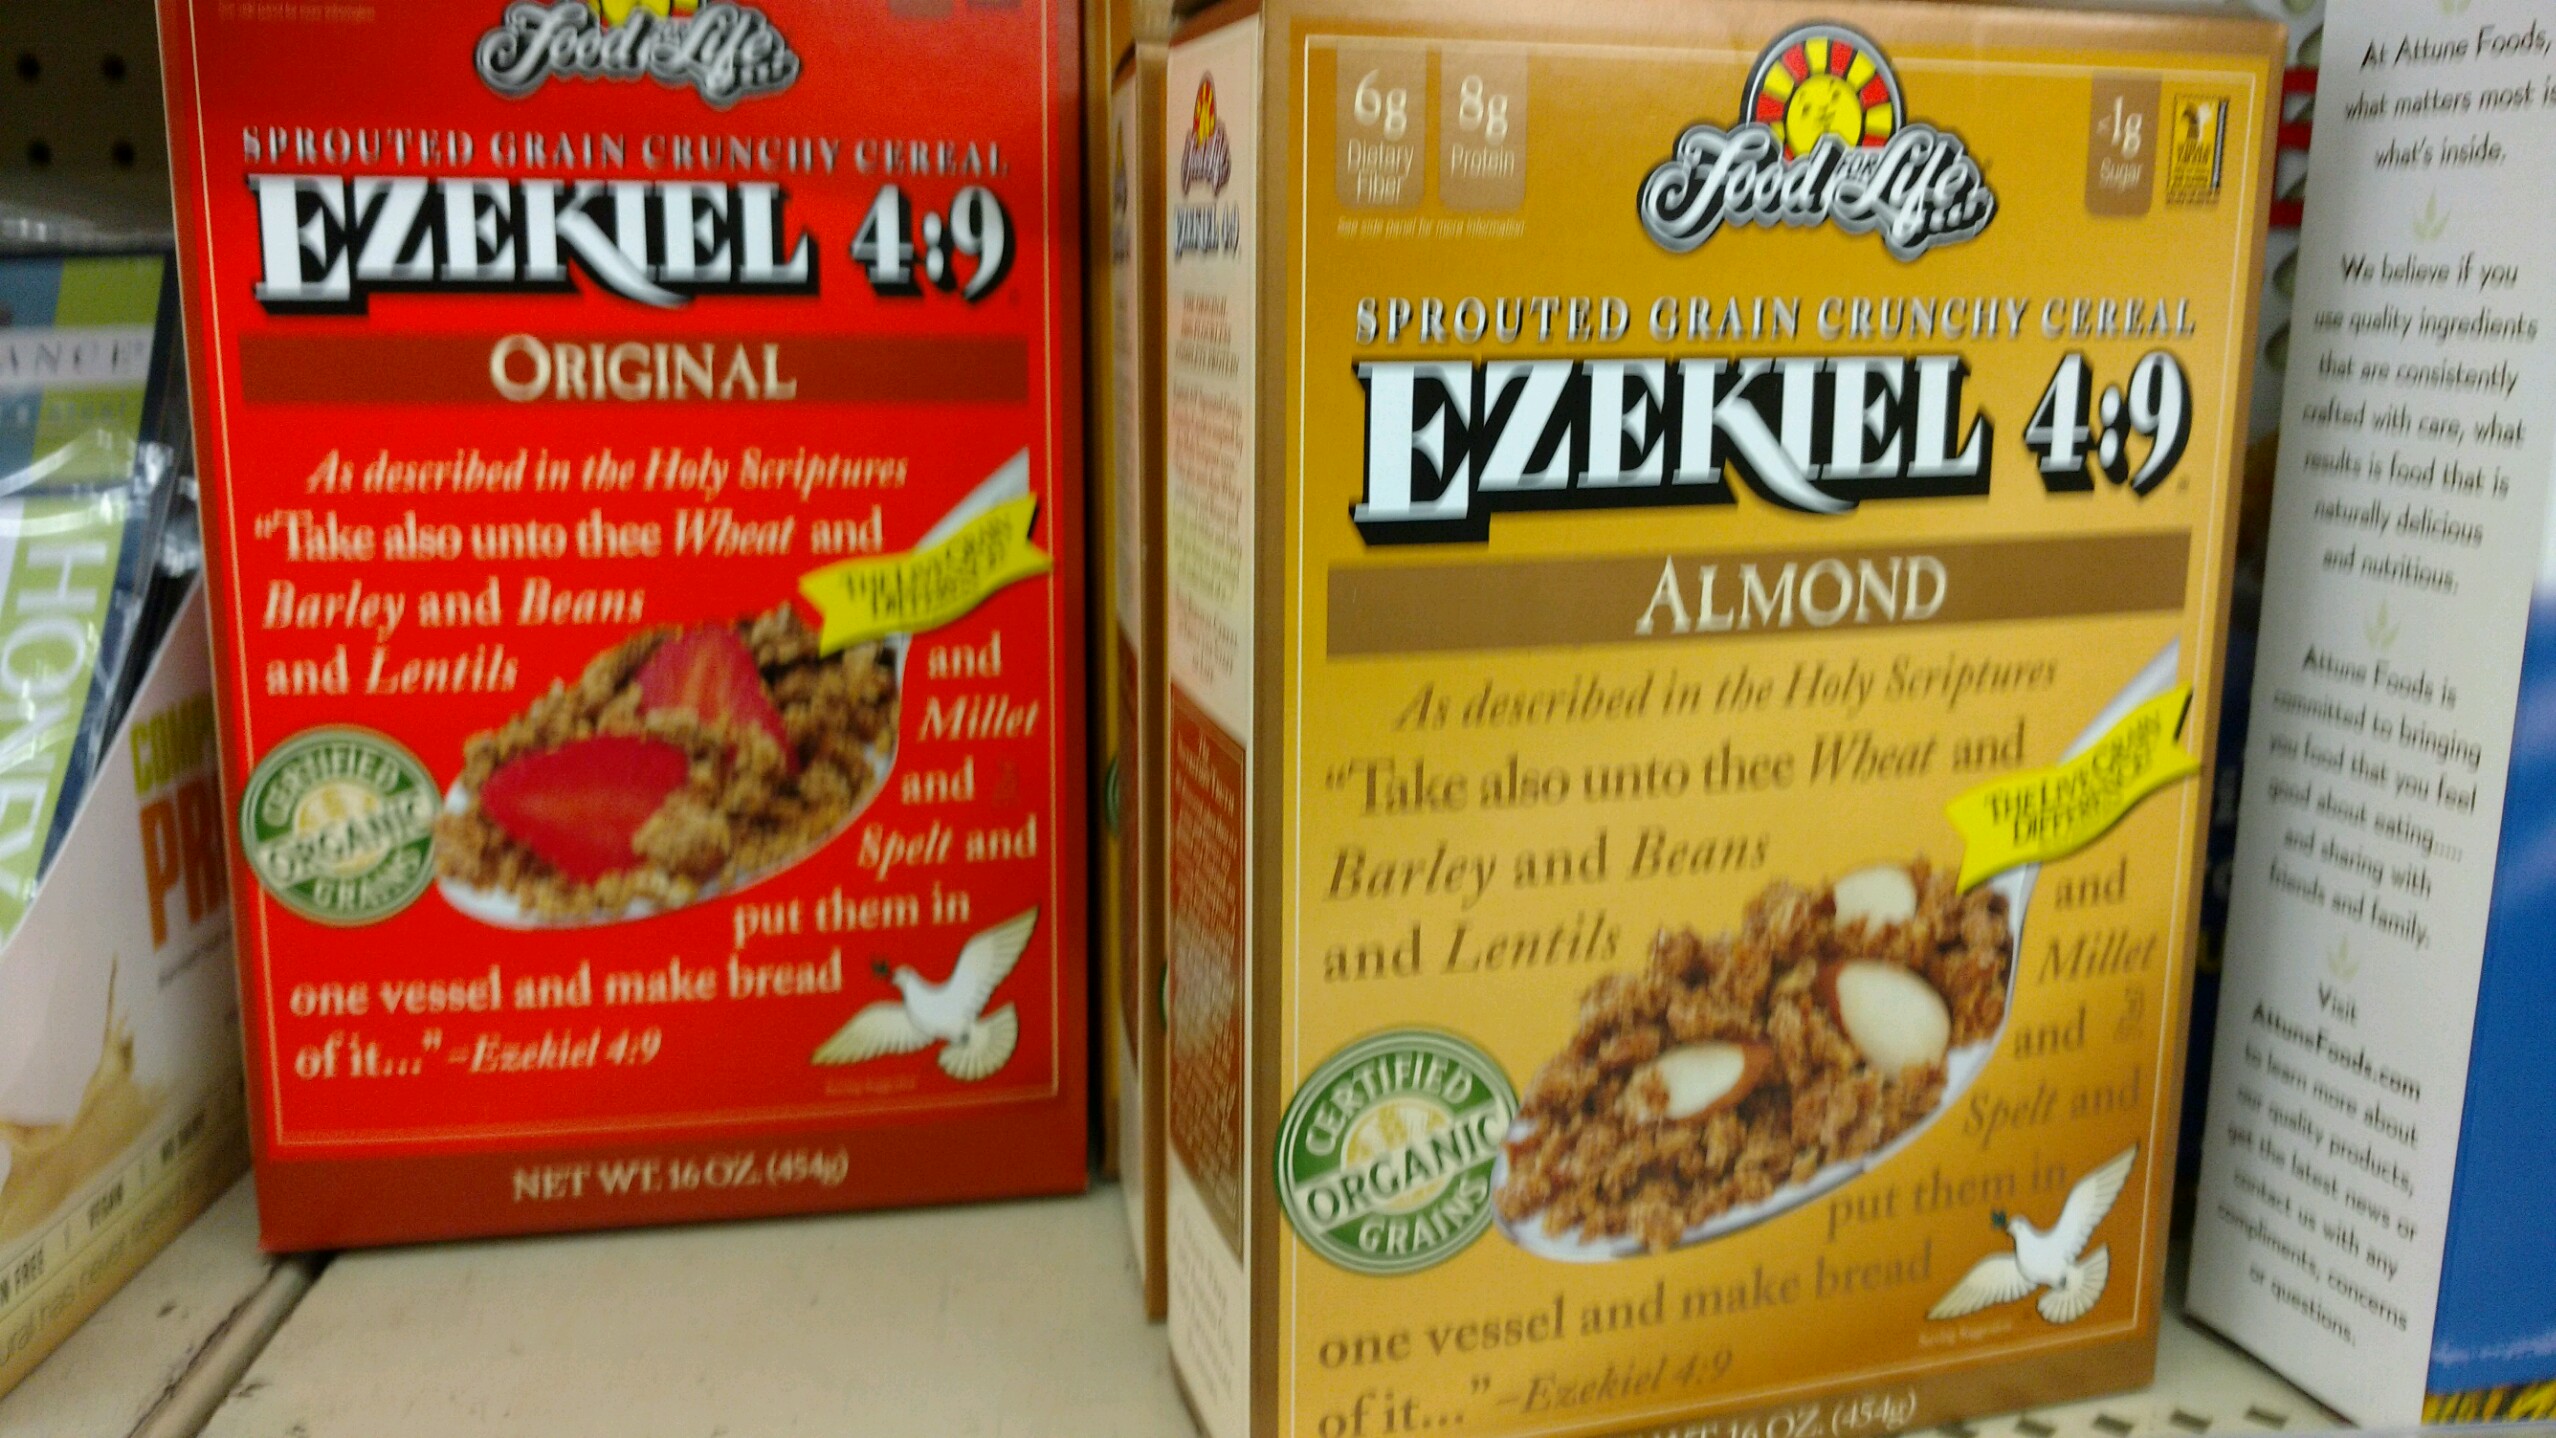 Ezekiel 4-9 cereal